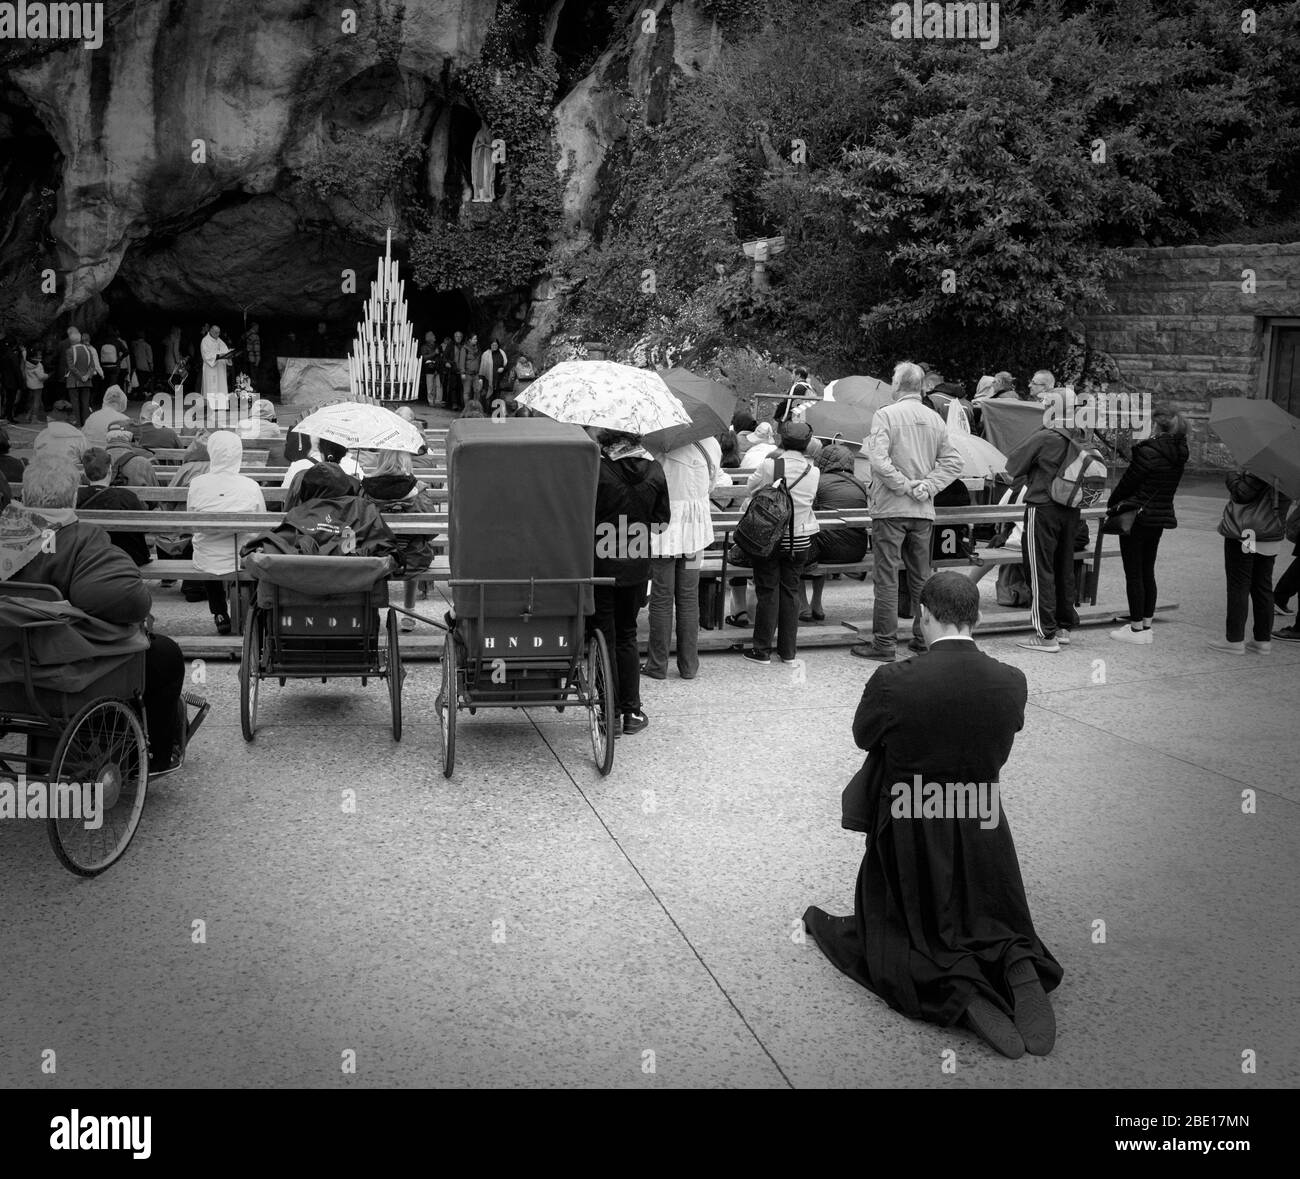 Ein Priester kniet zum Beten. Vor ihm Menschen im Rollstuhl. Im Hintergrund rezitiert ein anderer Priester Gebete am Eingang der Massabielle Stockfoto